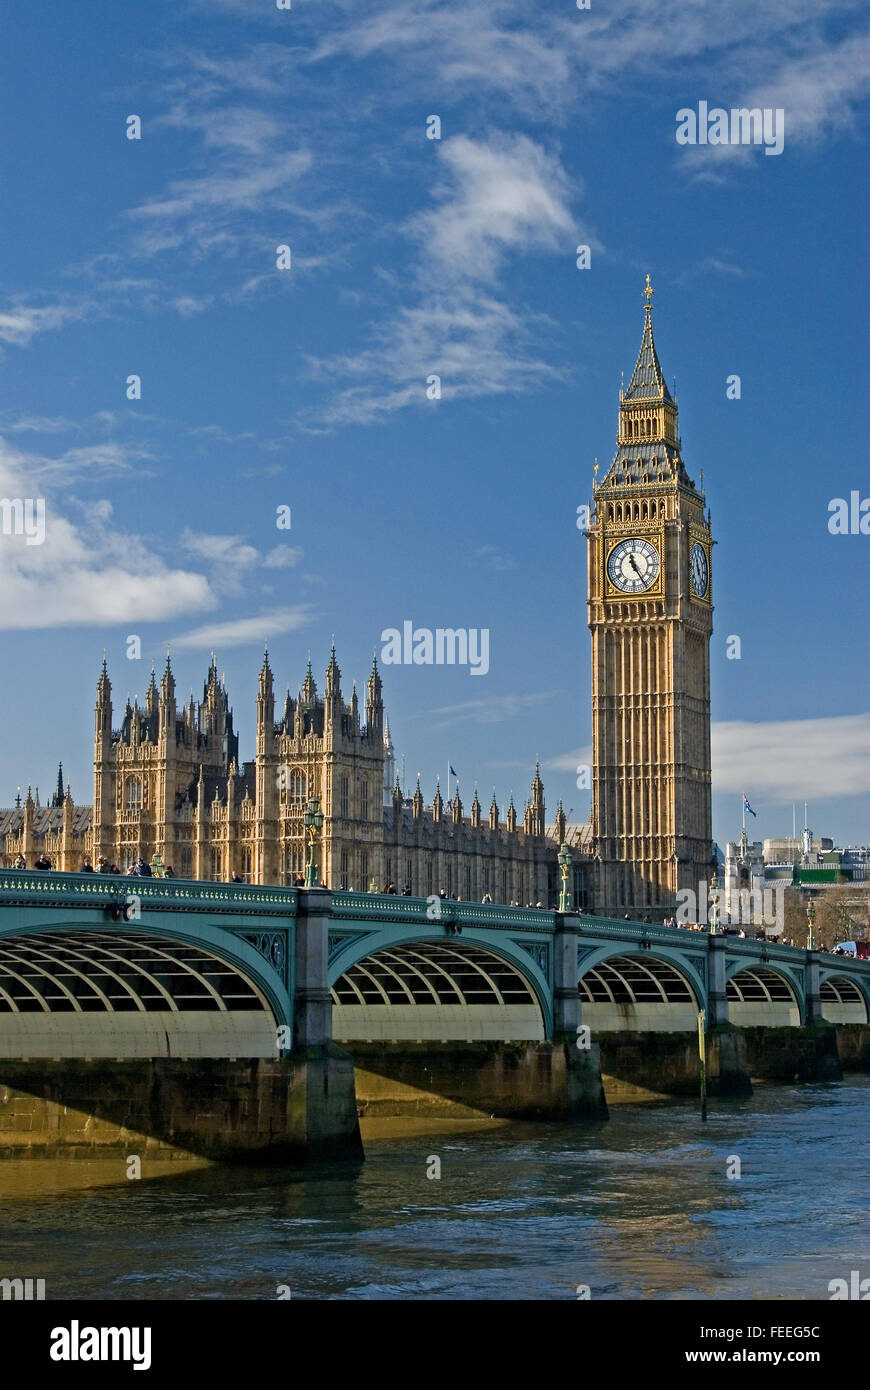 Die ikonischen Wahrzeichen von London, Big Ben, Teil des Palace of Westminster an den Häusern des Parlaments, steht am Ende der Westminster Bridge, London Stockfoto